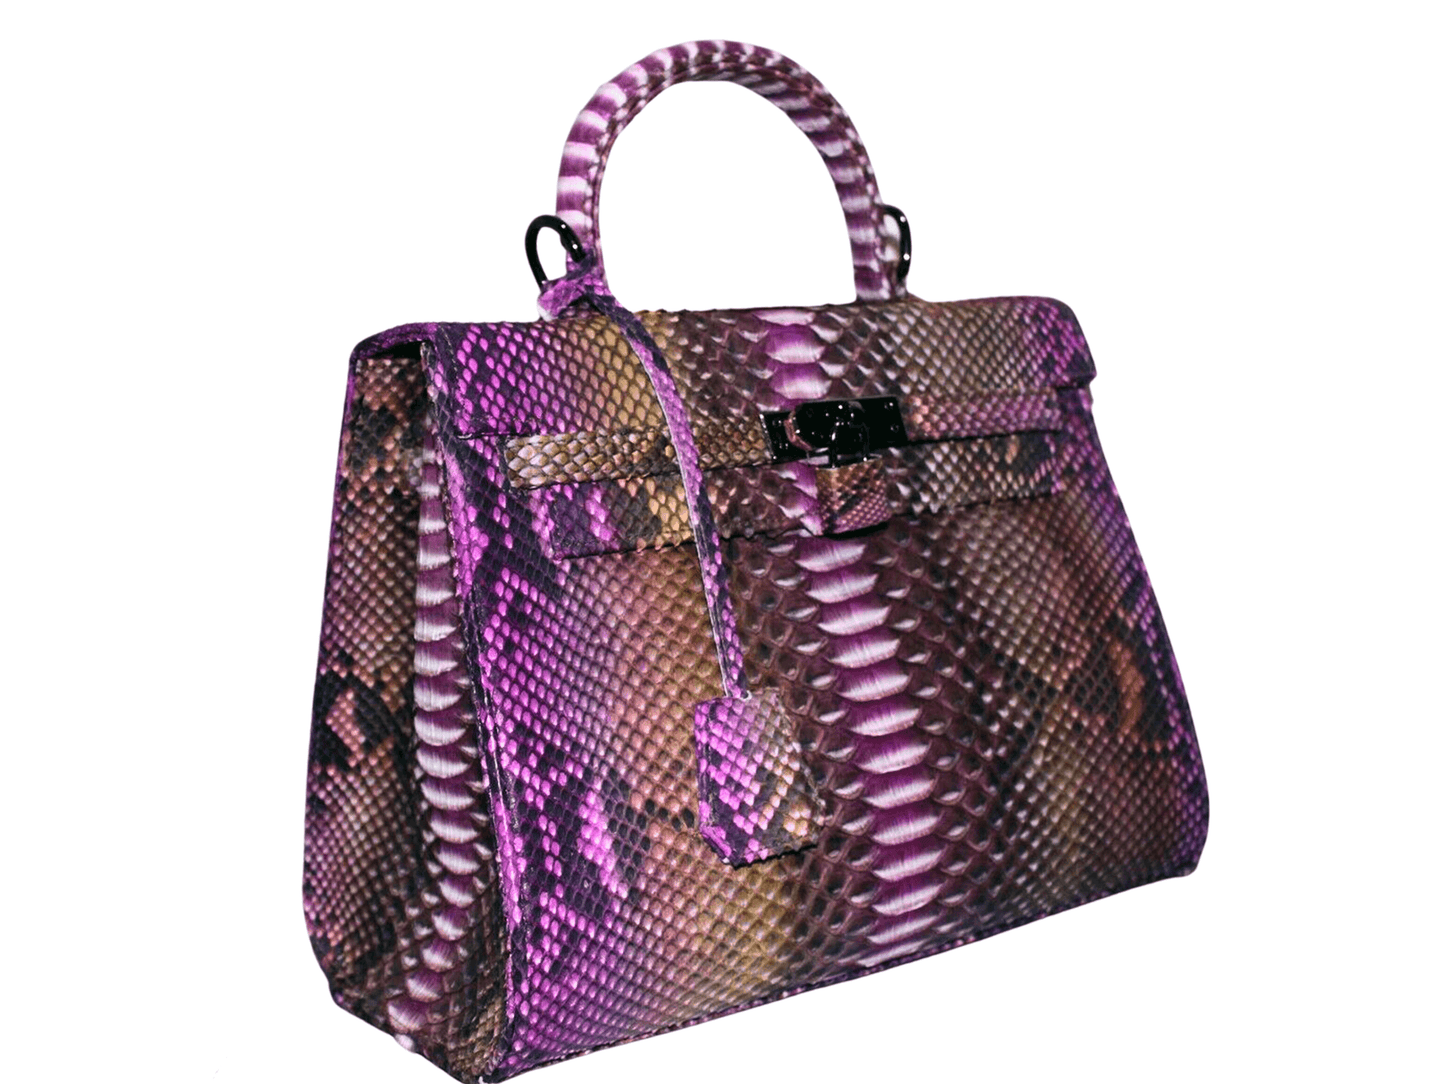 Snakeskin Kelly Bag 28 Candy Pink Python Jacket by LFM Fashion